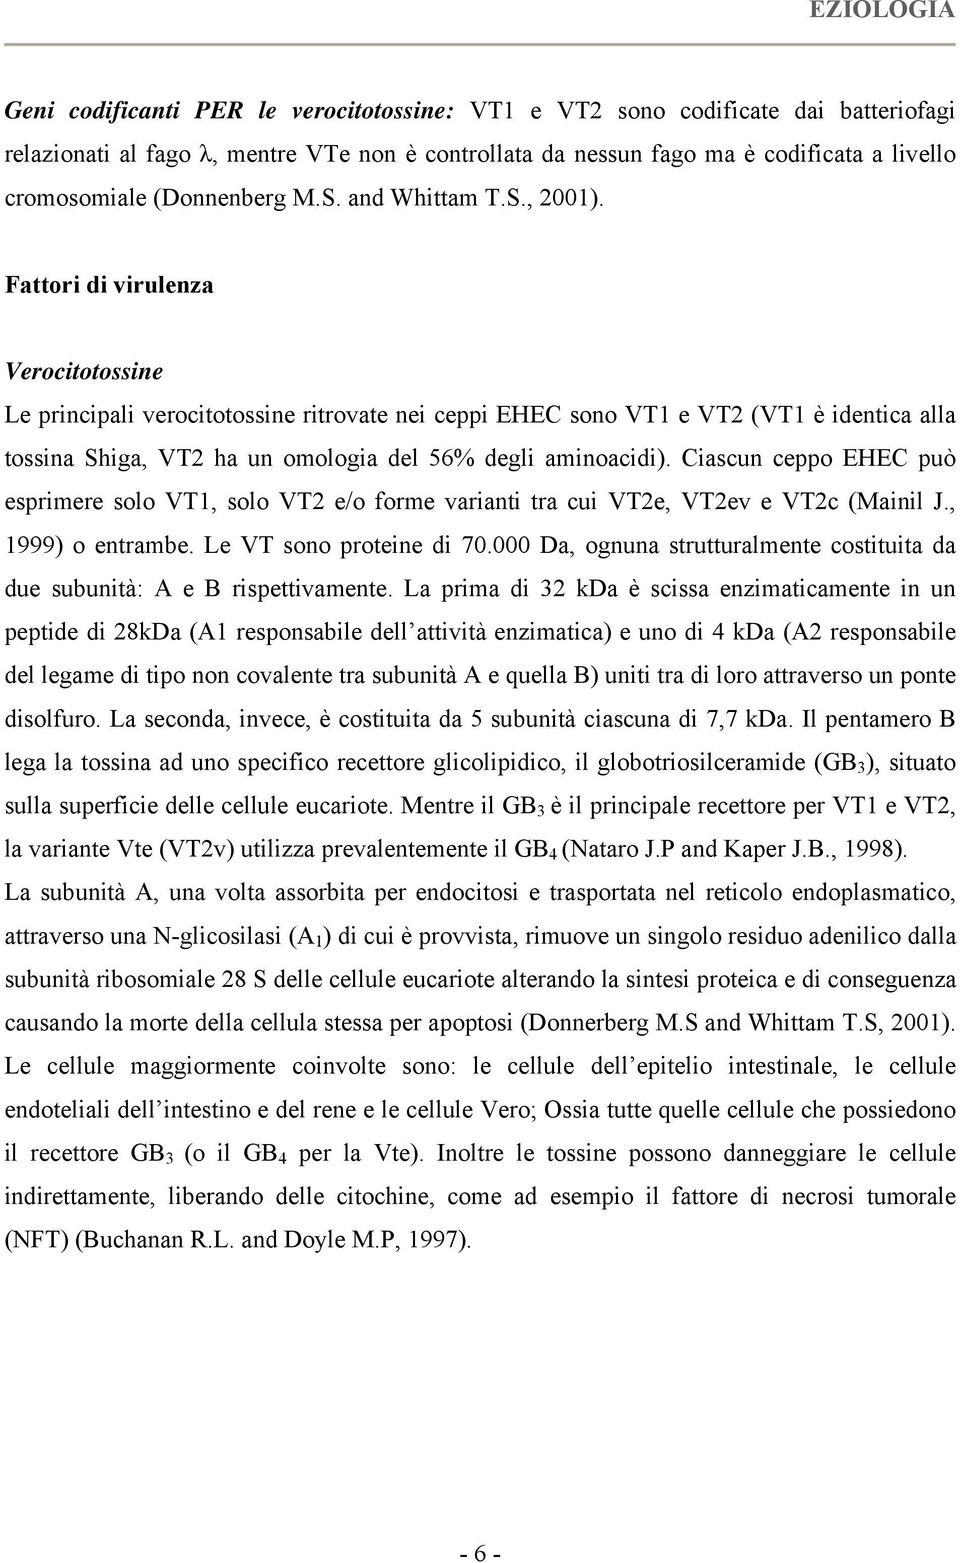 Fattori di virulenza Verocitotossine Le principali verocitotossine ritrovate nei ceppi EHEC sono VT1 e VT2 (VT1 è identica alla tossina Shiga, VT2 ha un omologia del 56% degli aminoacidi).